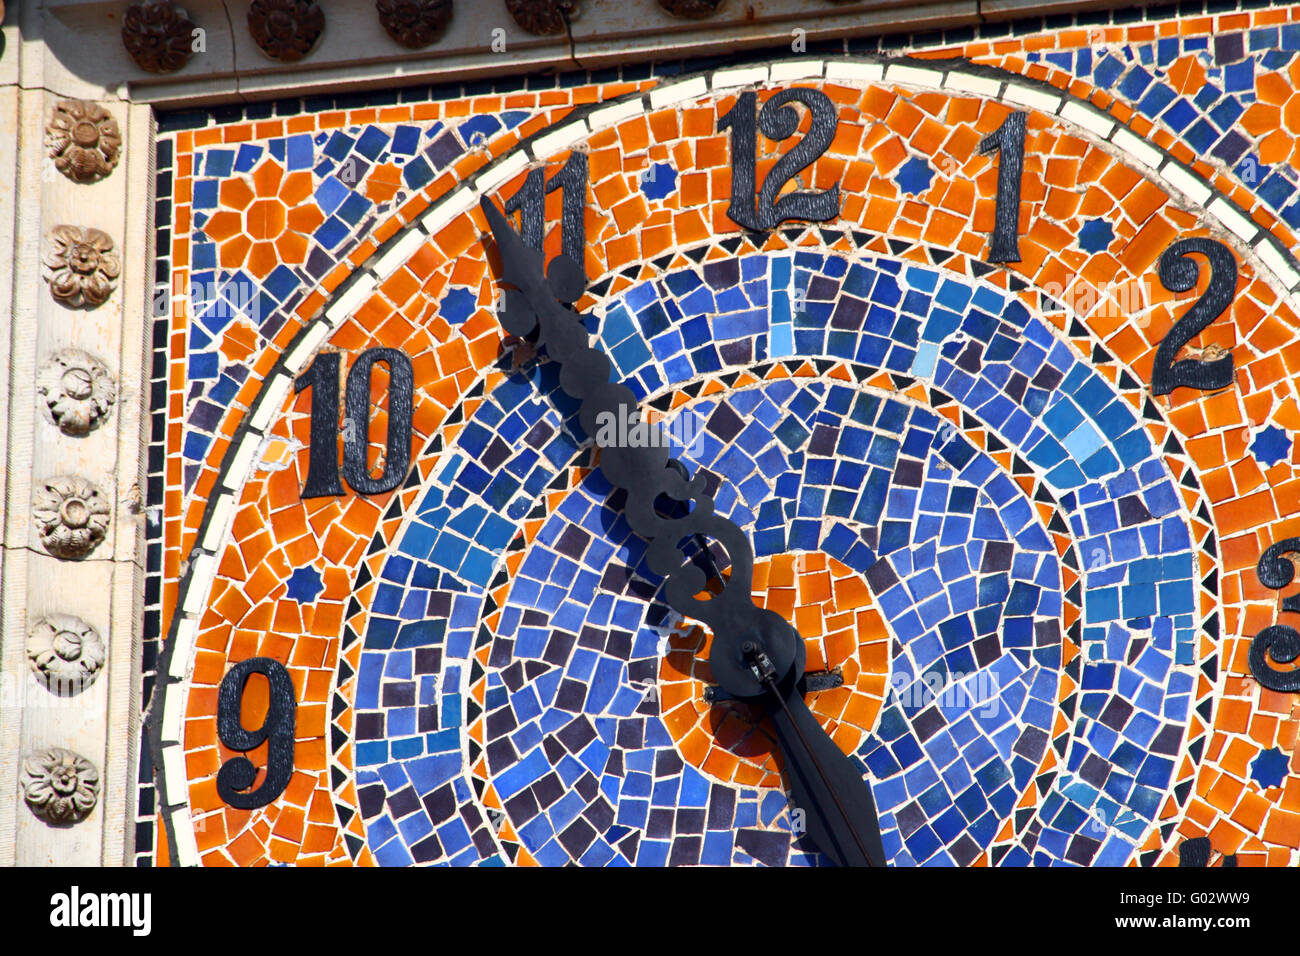 Vieille horloge en céramique en haut de l'immeuble Banque D'Images